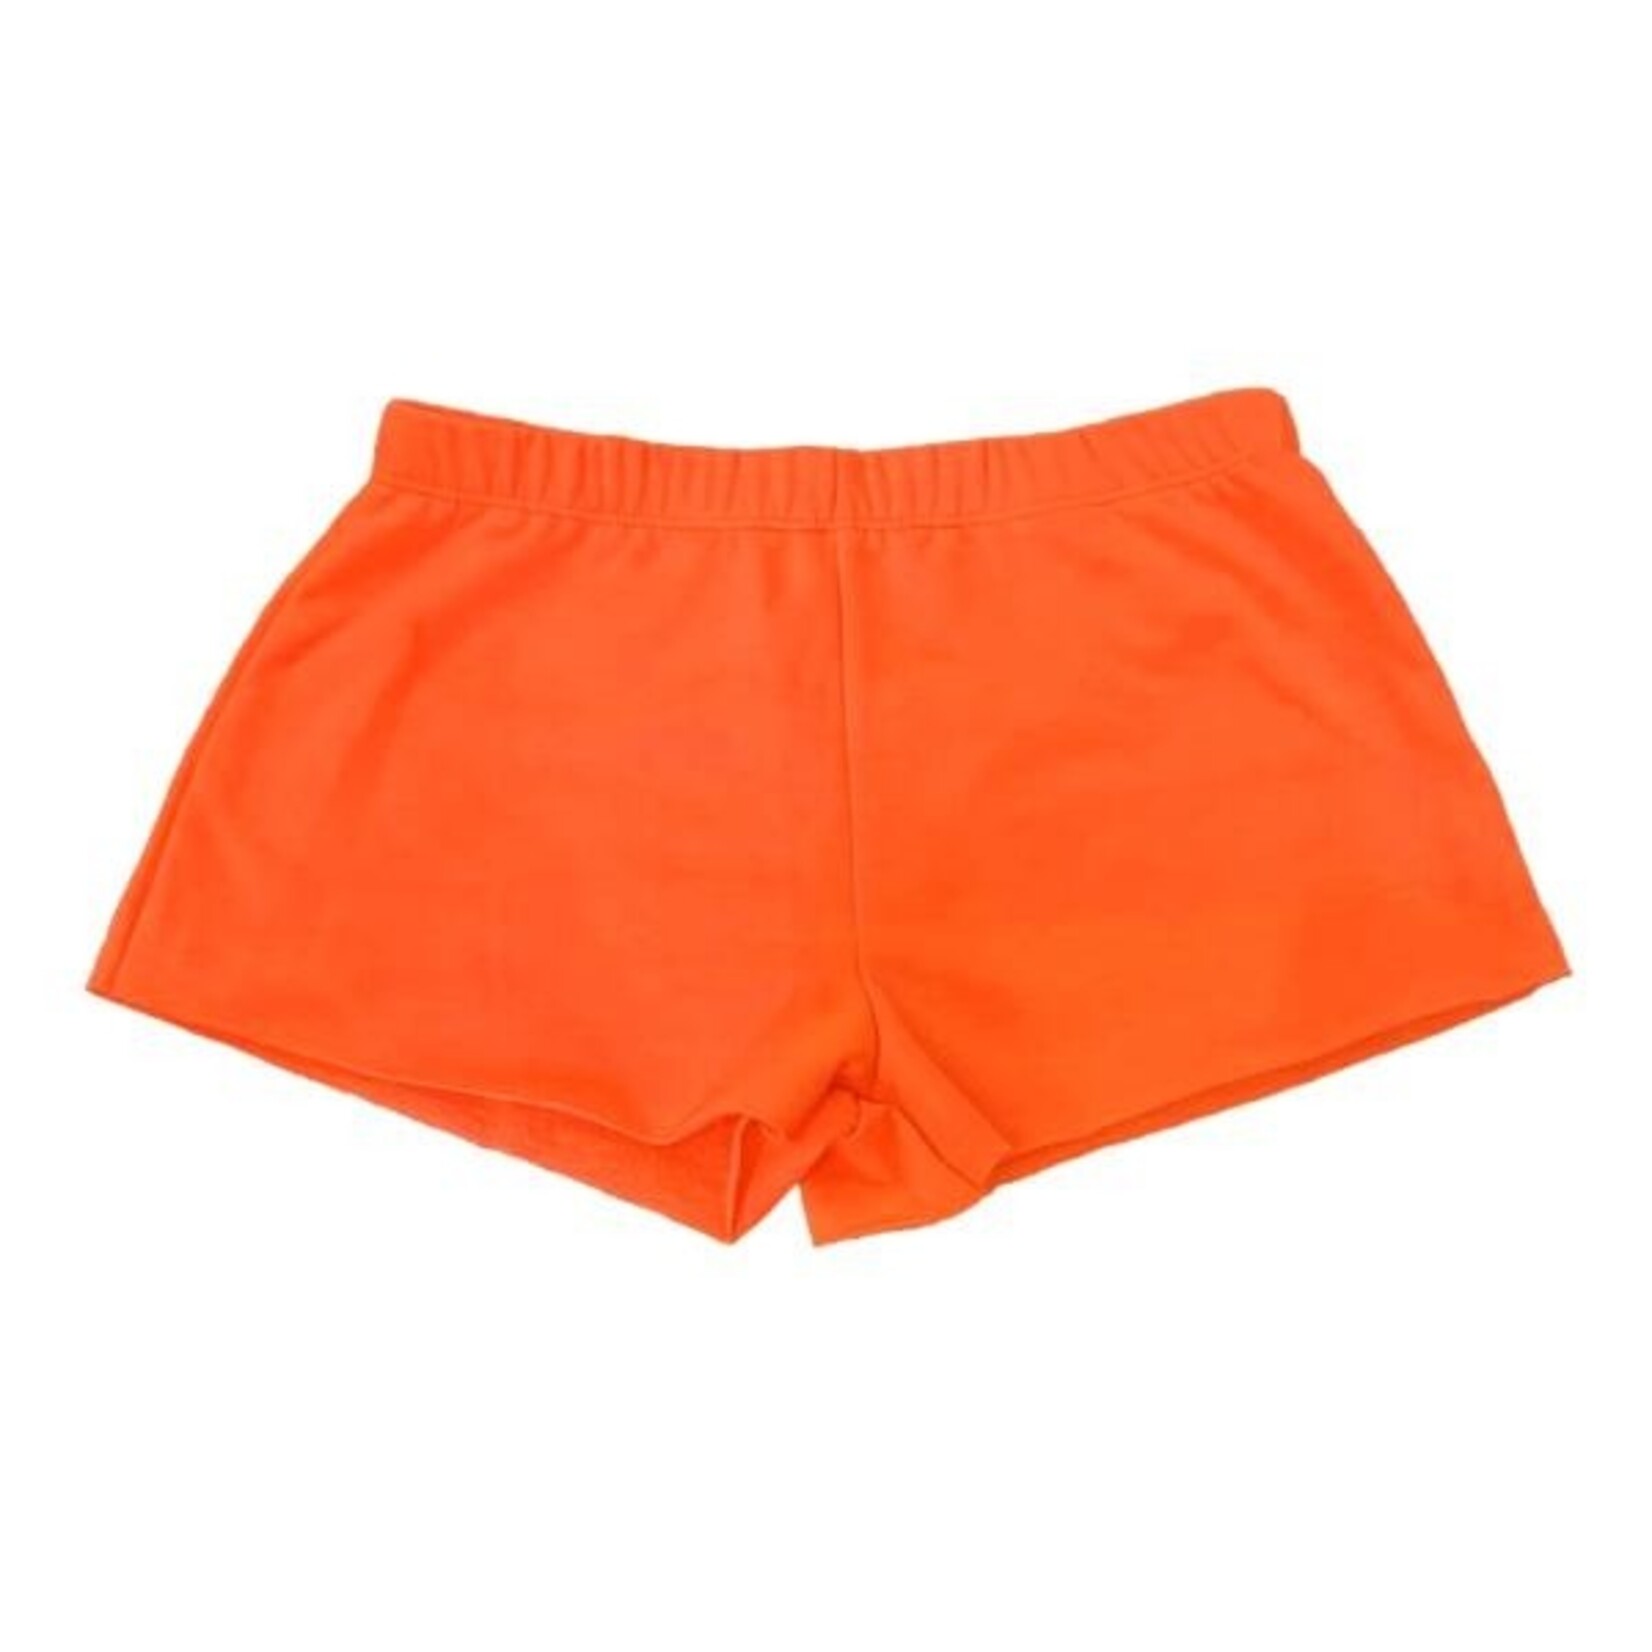 Tweenstyle Neon Fleece Shorts